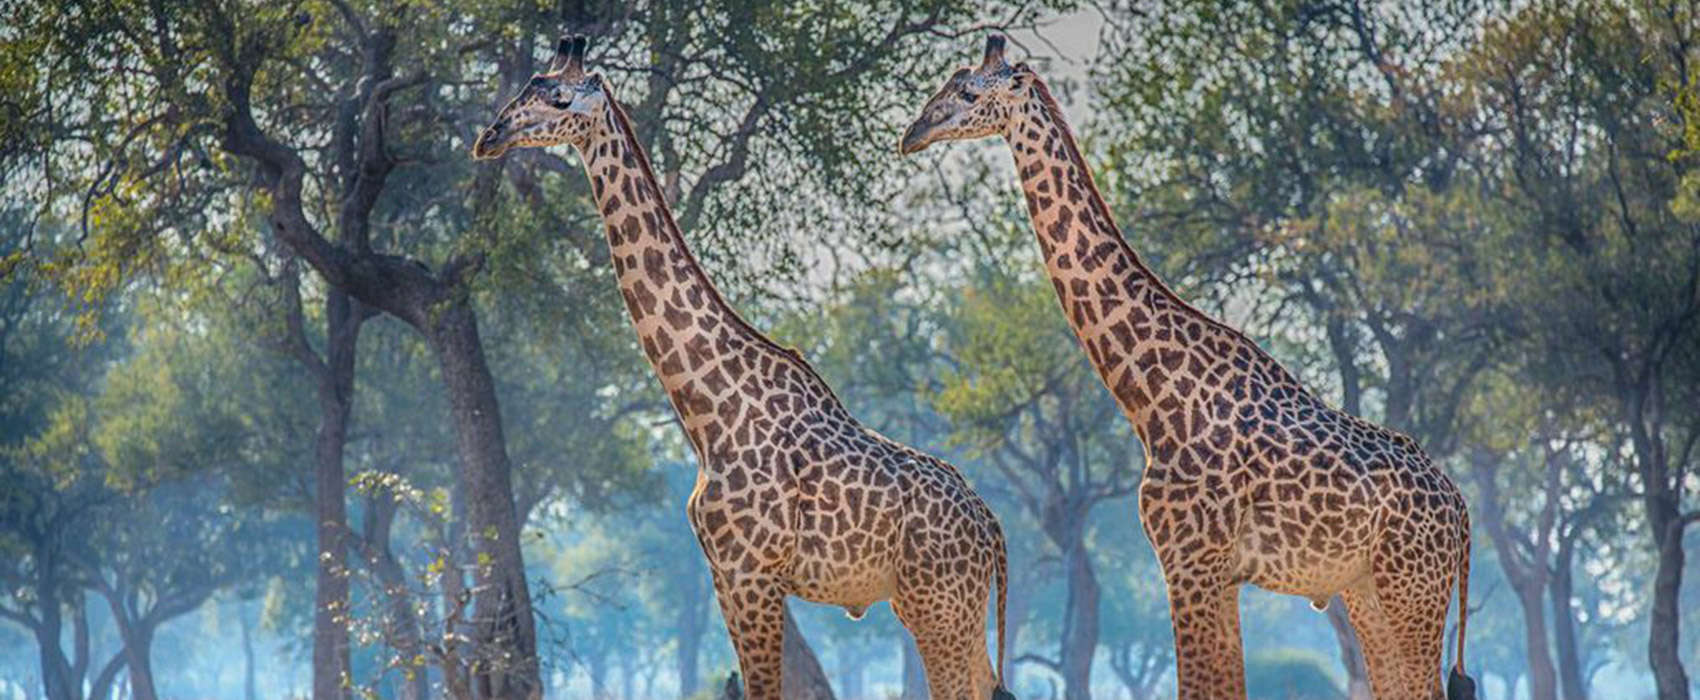 African Zambia Safari giraffe